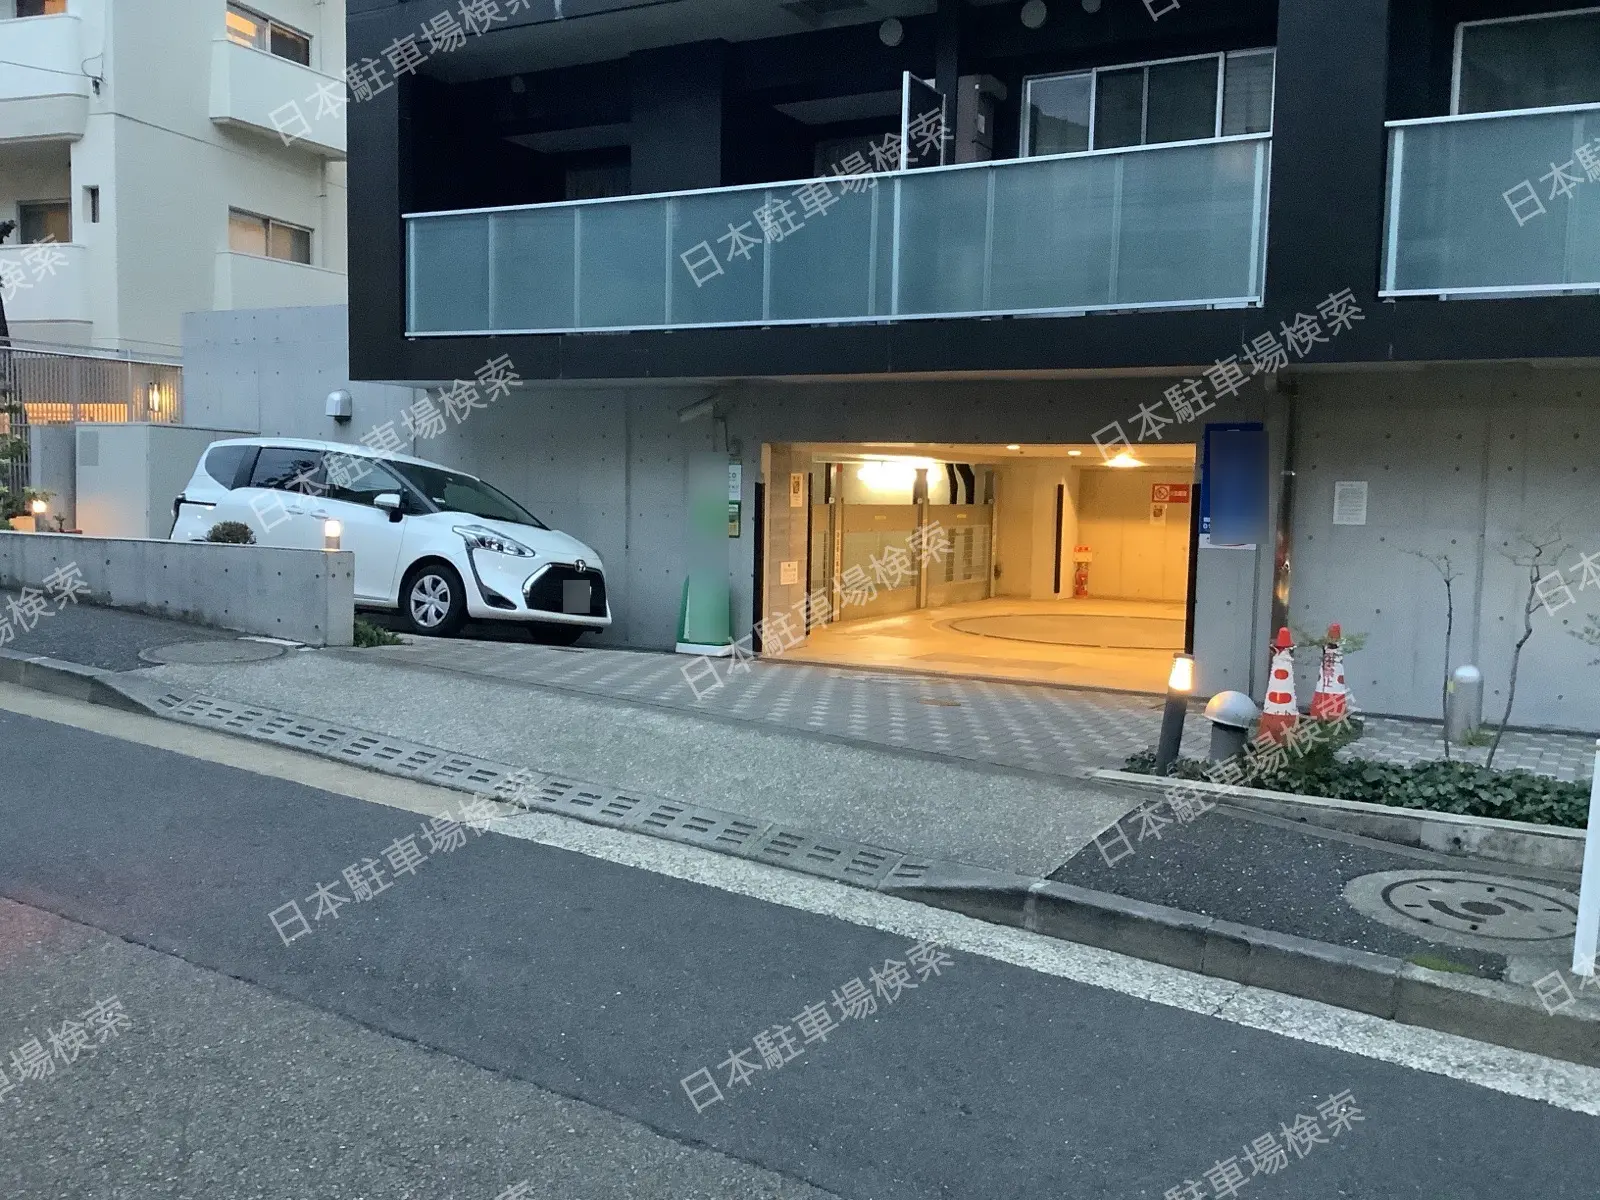 中目黒徒歩6分 屋根付き 月極め駐車場 - 東京都のその他